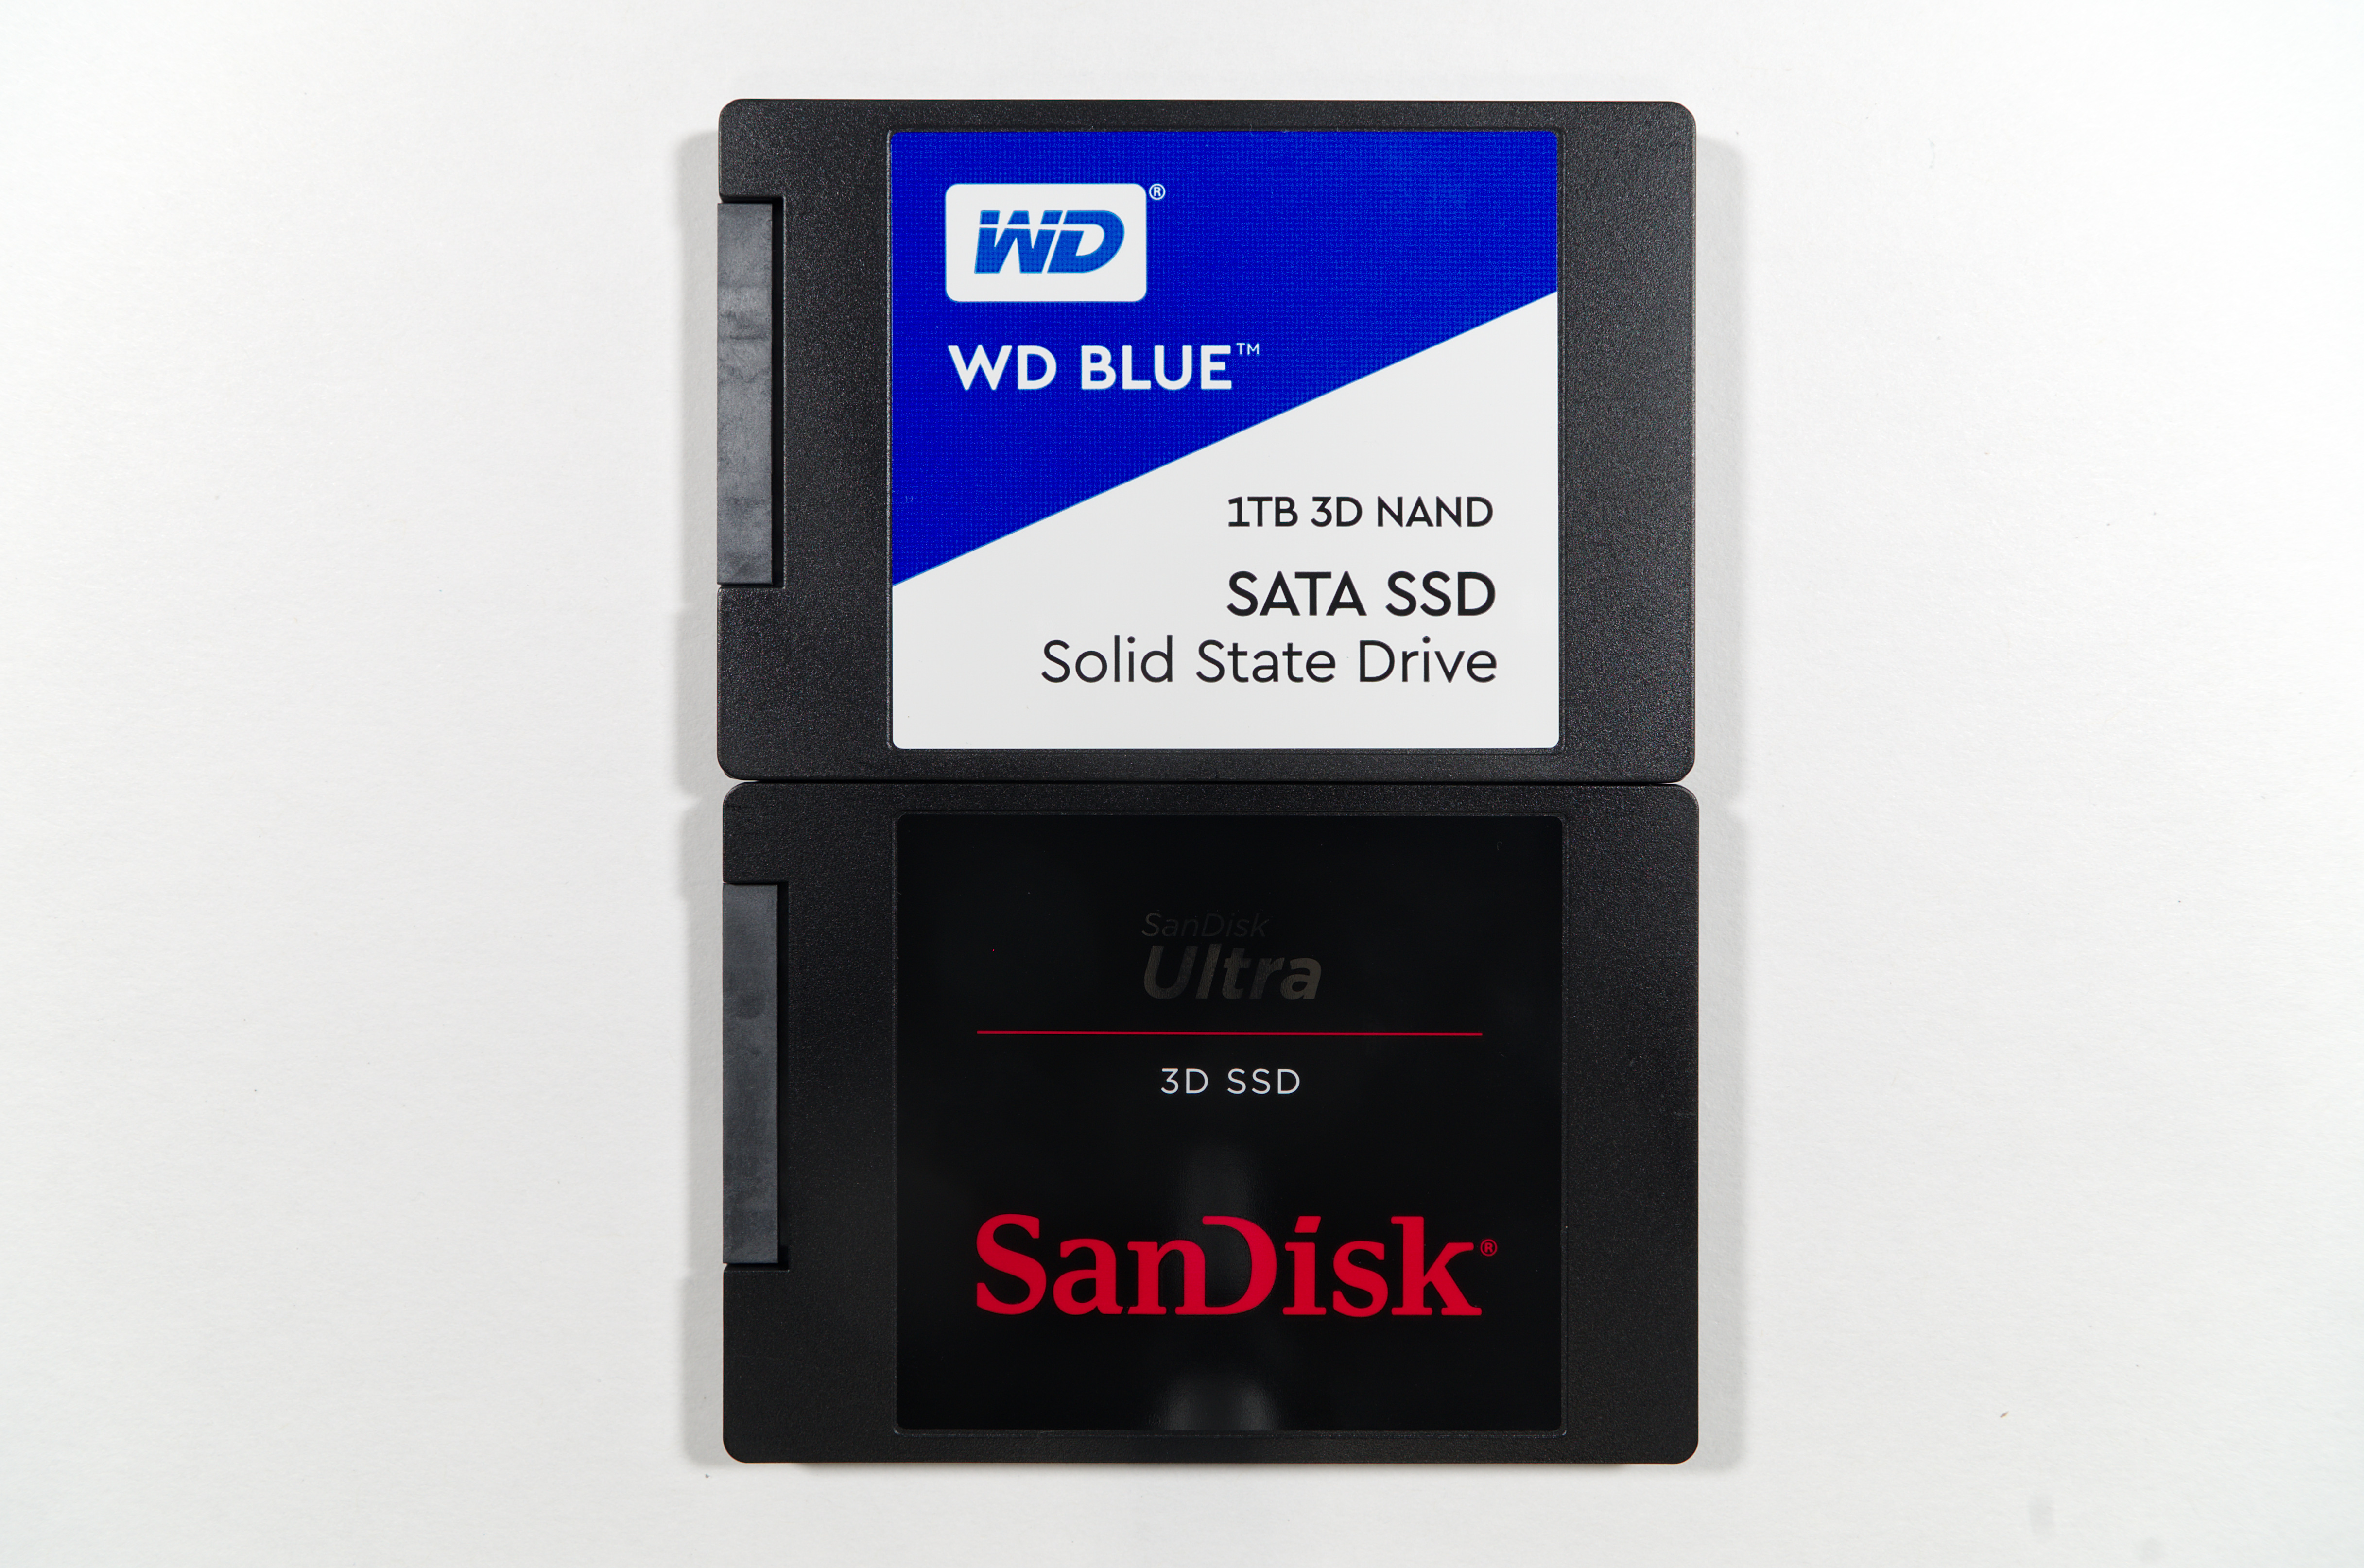 SANDISK SSD 2tb. SSD 512gb. SANDISK Ultra 3d SSD 2 TB. SANDISK SSD 1tb 3d.